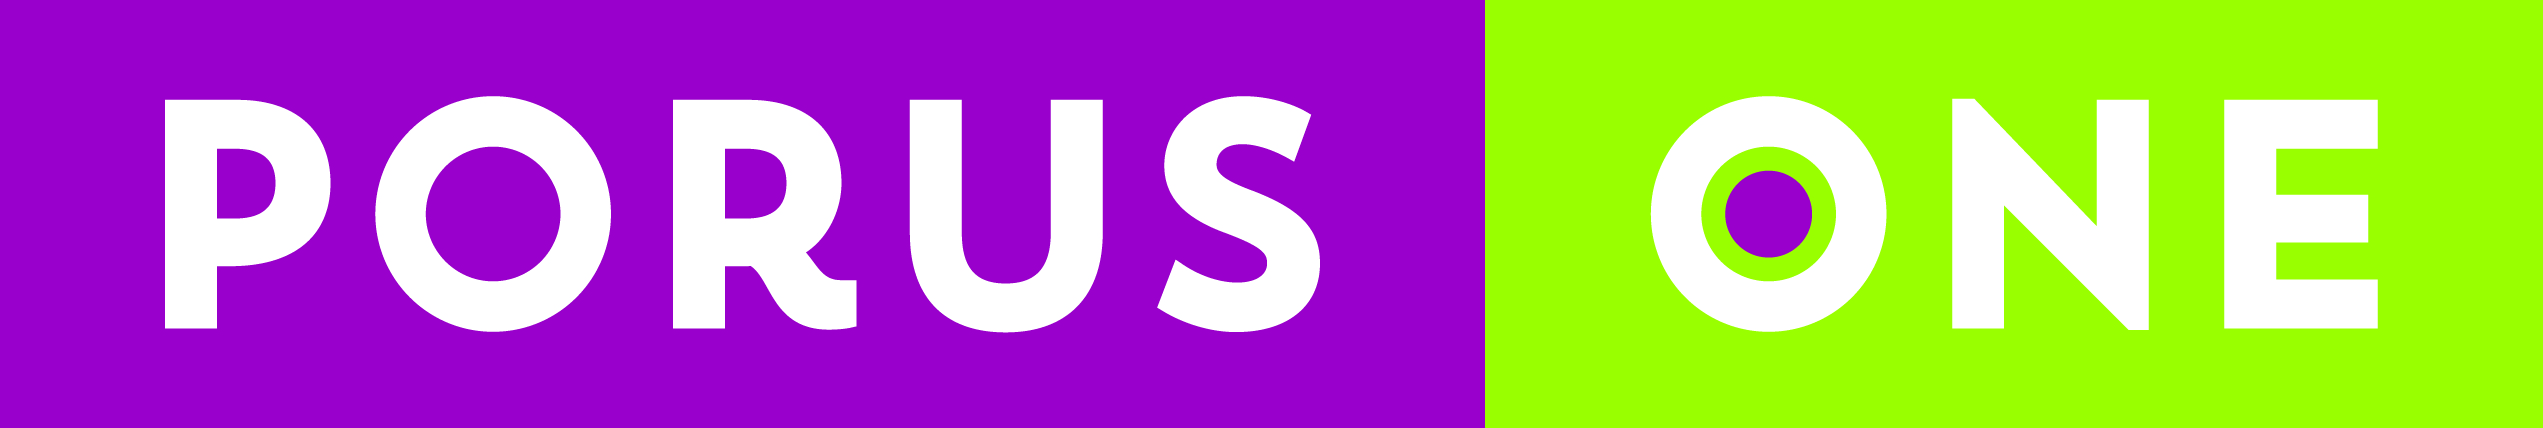 Porus One logo